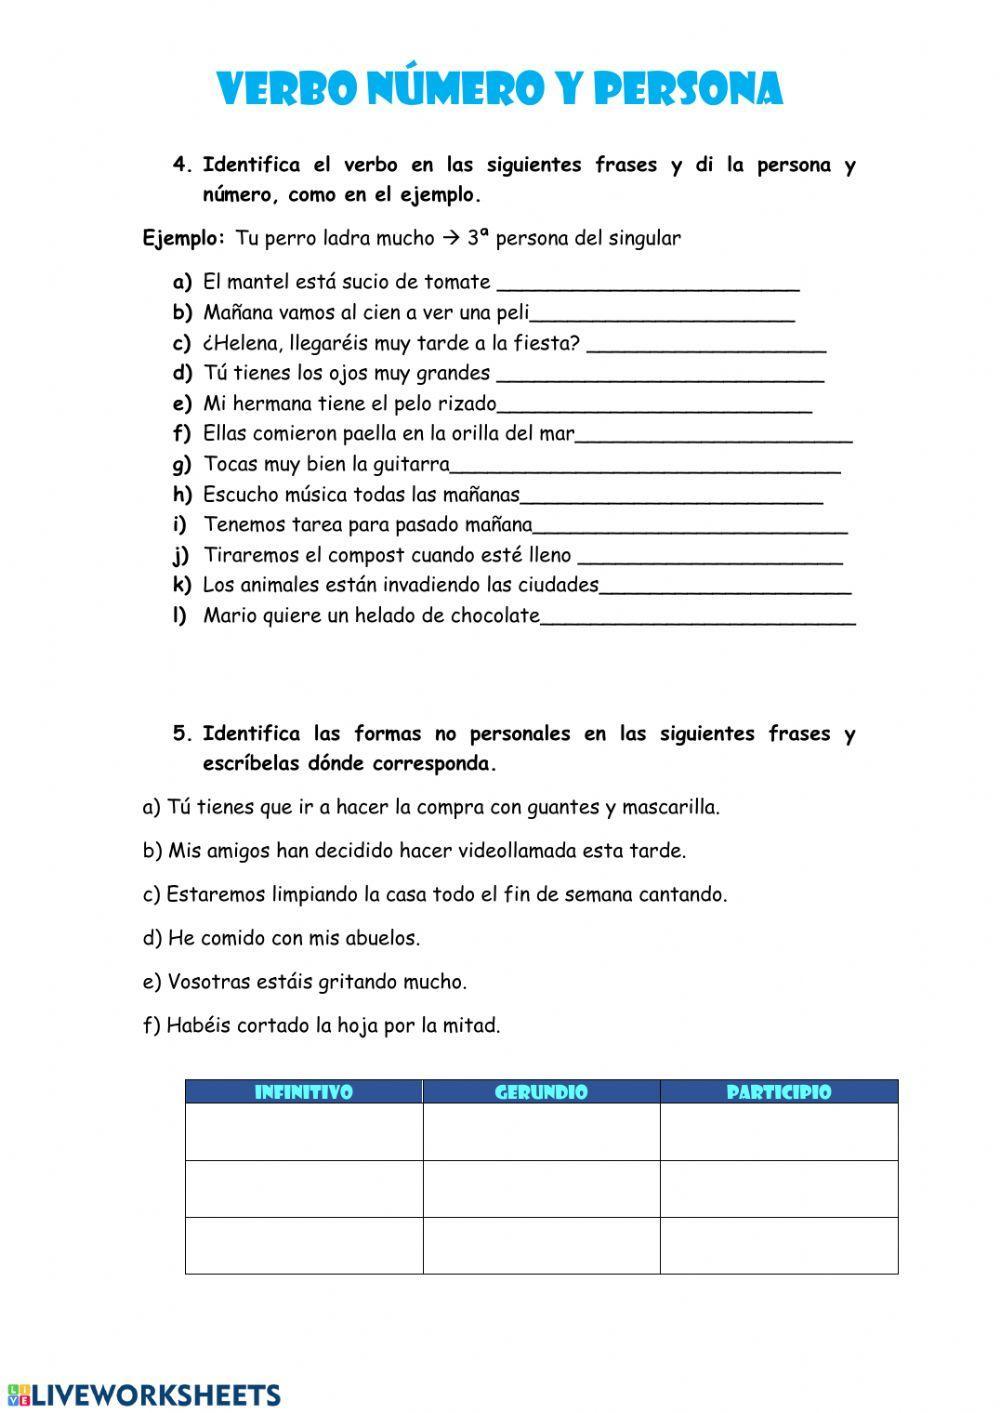 Verbo: número y persona worksheet | Live Worksheets